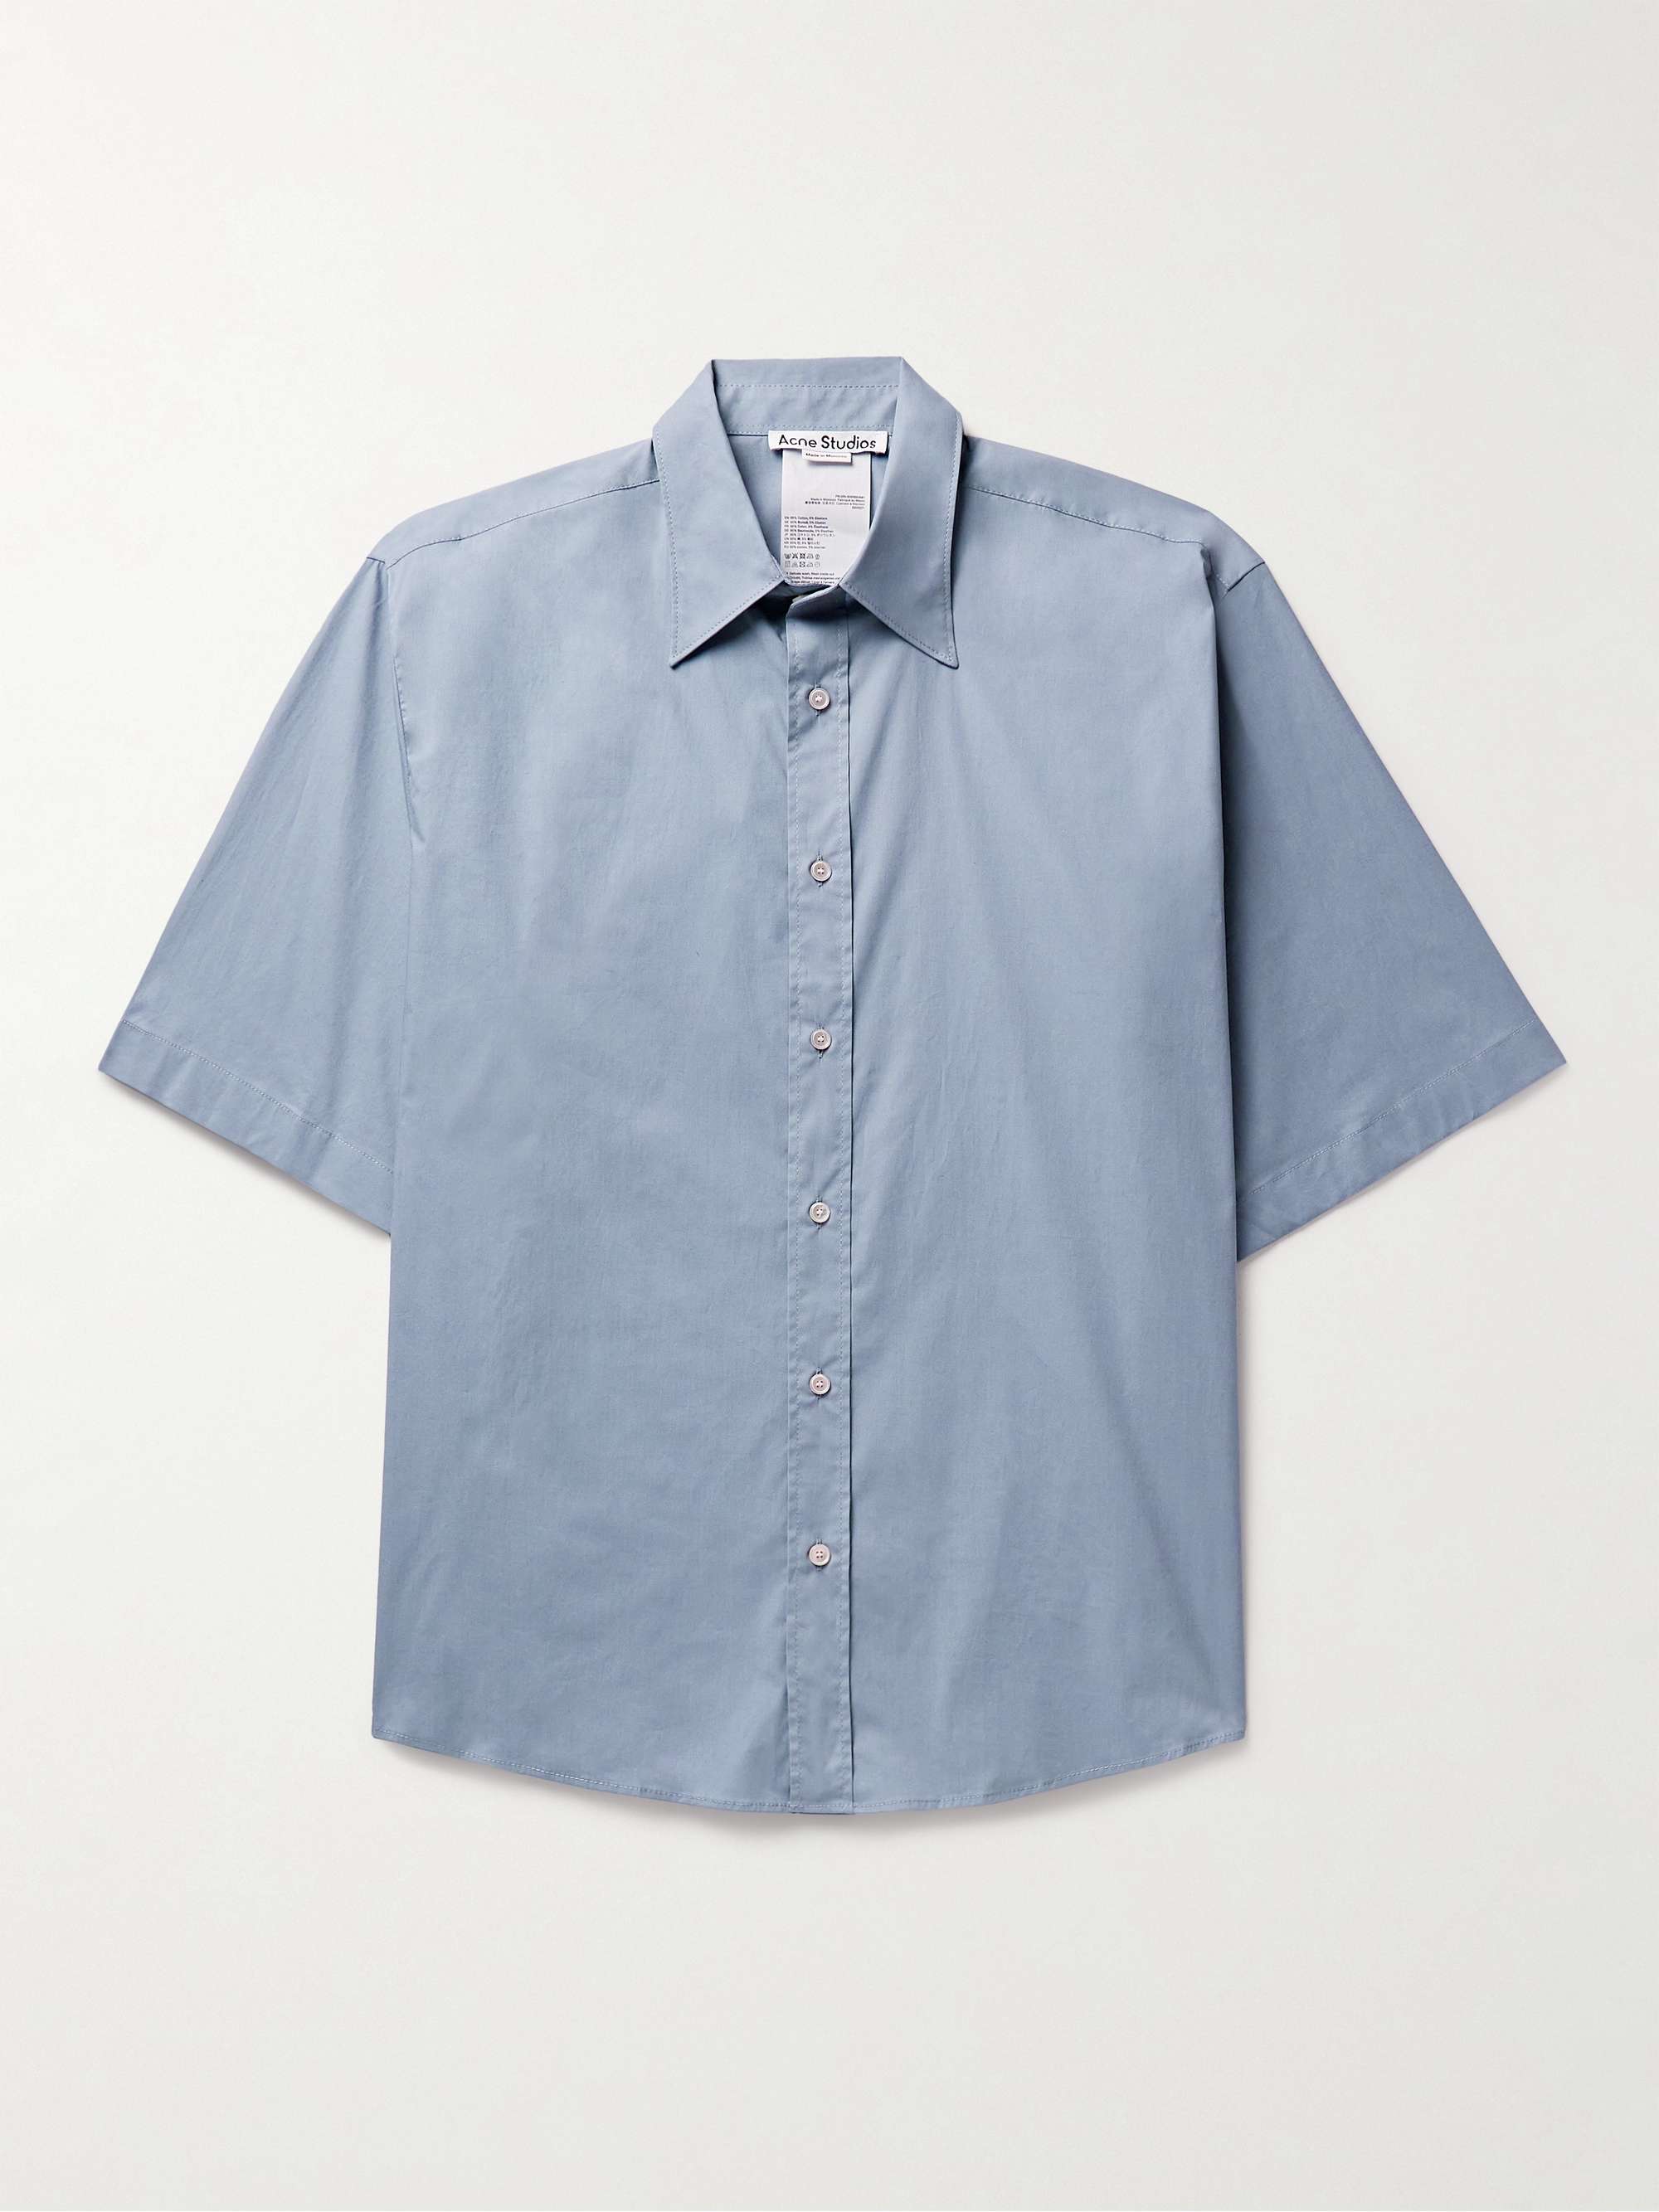 ACNE STUDIOS Sandrok Oversized Cotton-Blend Poplin Shirt for Men | MR ...